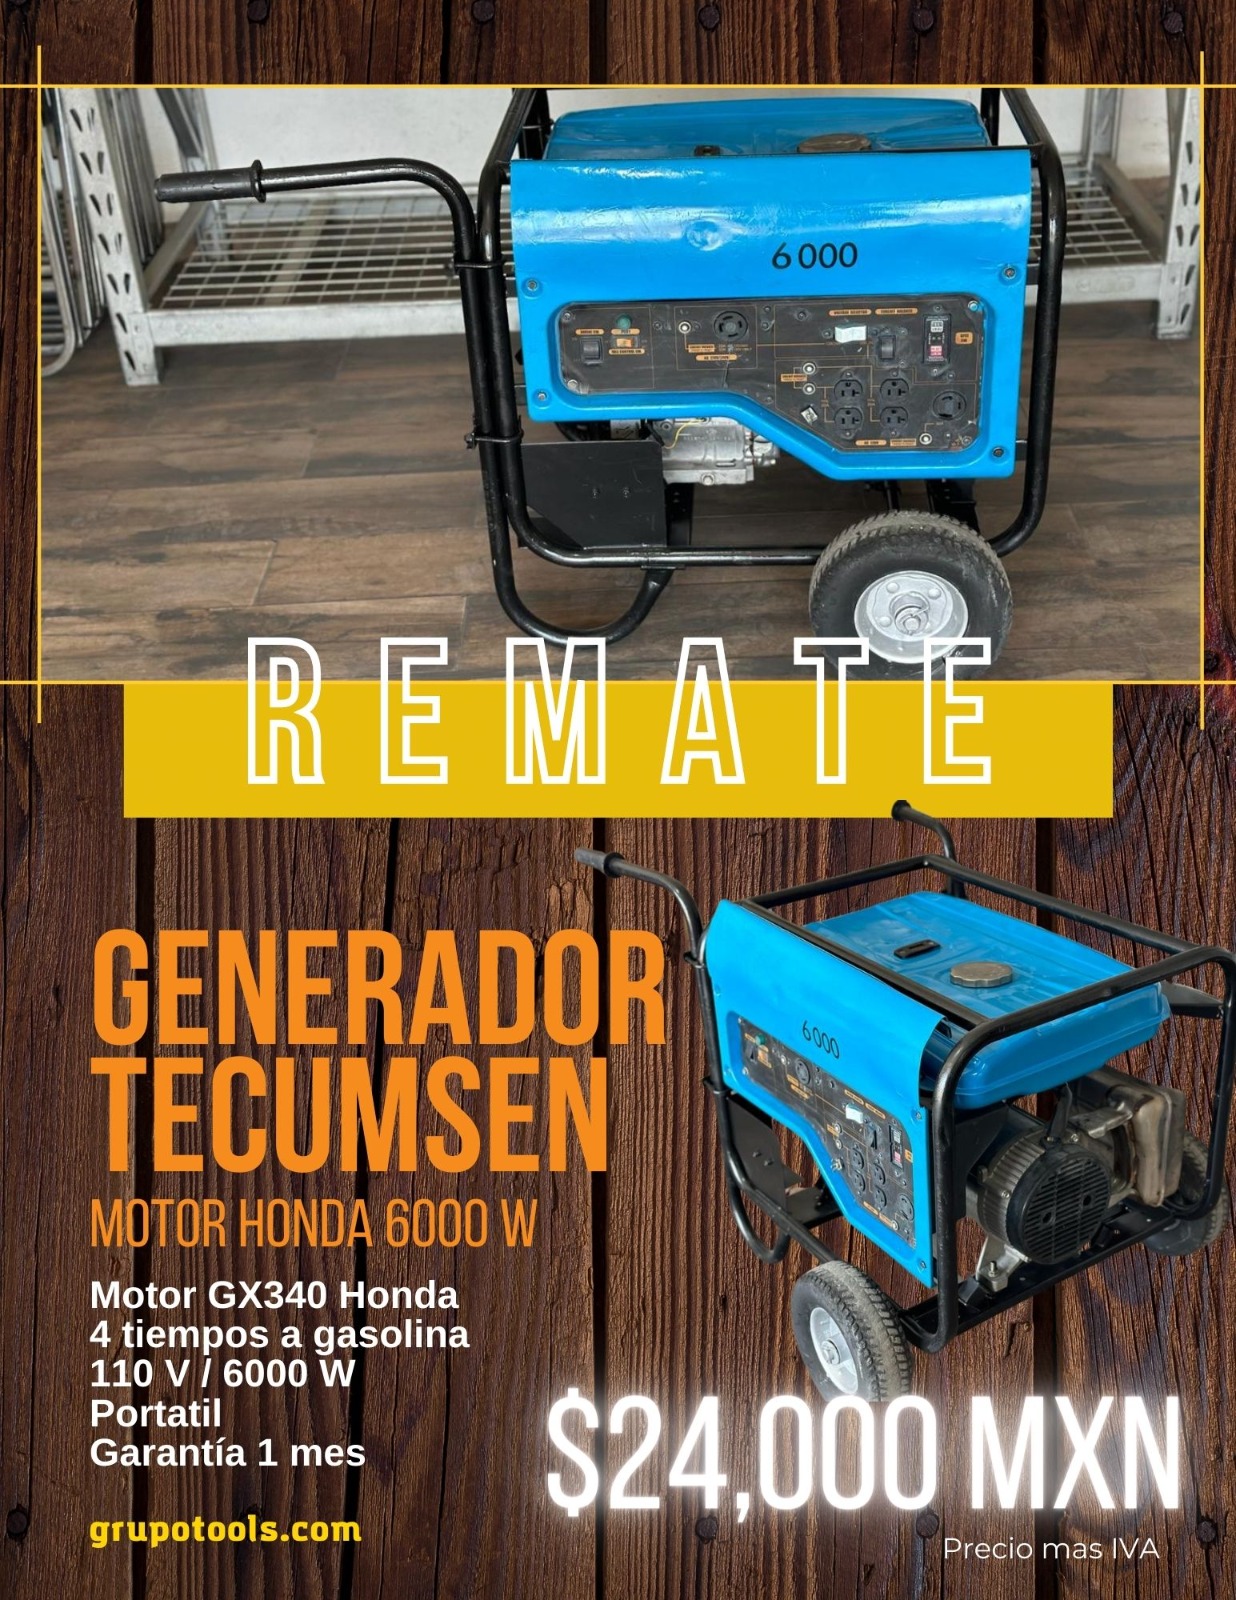 Remate generador Tecumsen